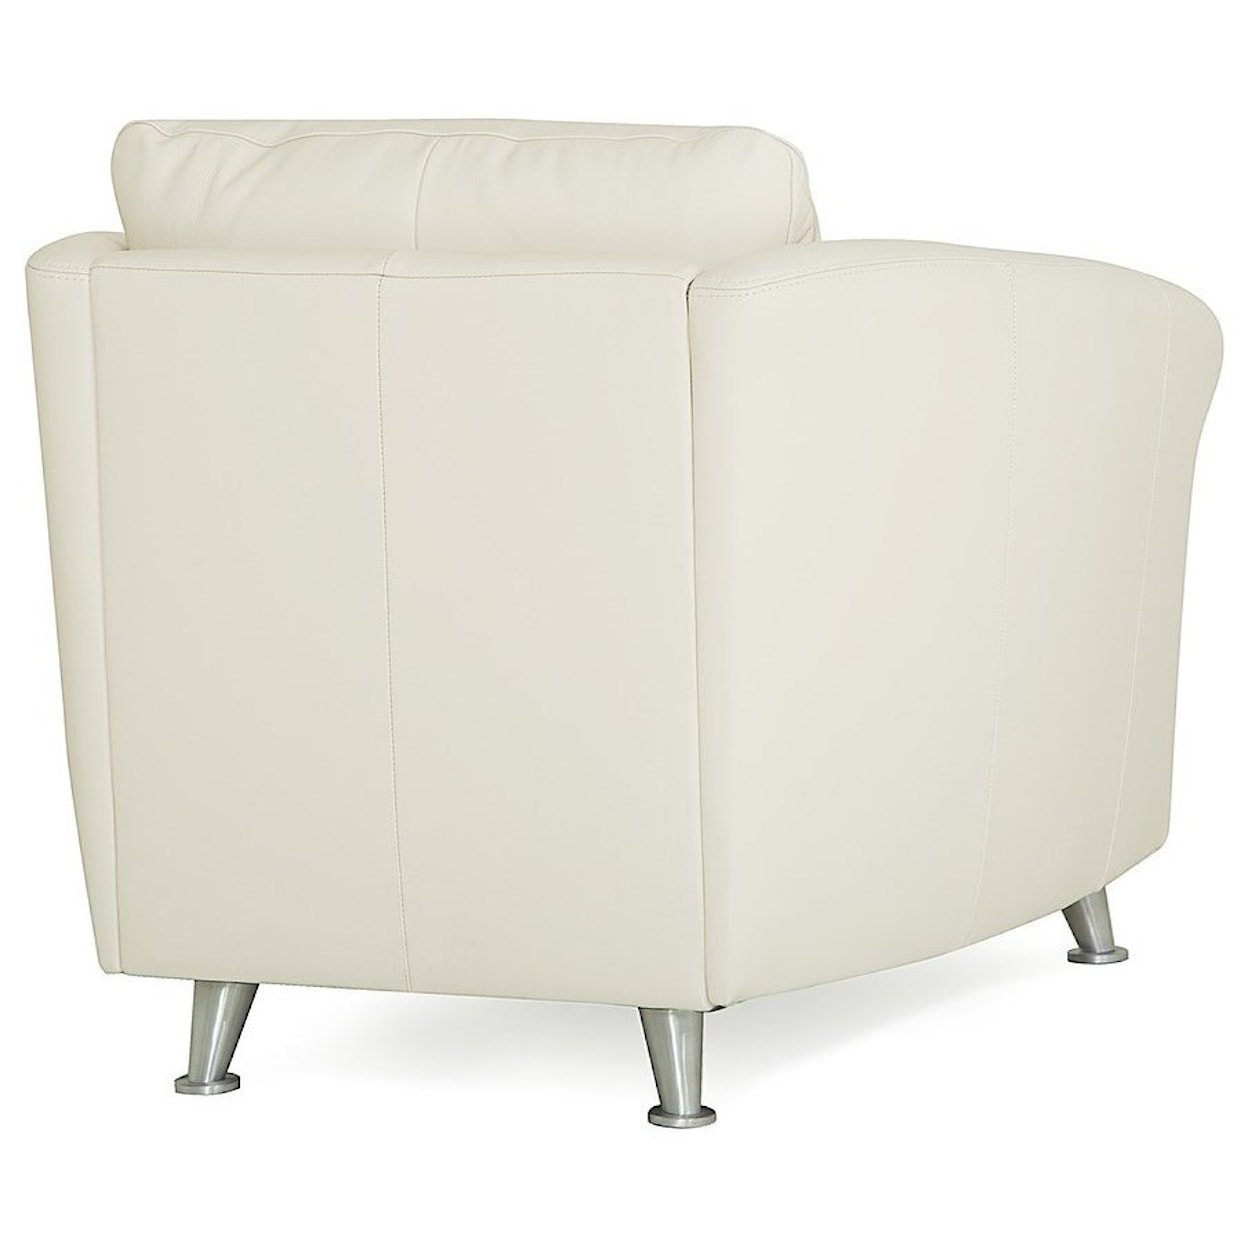 Palliser Alula 70427 Upholstered Chair